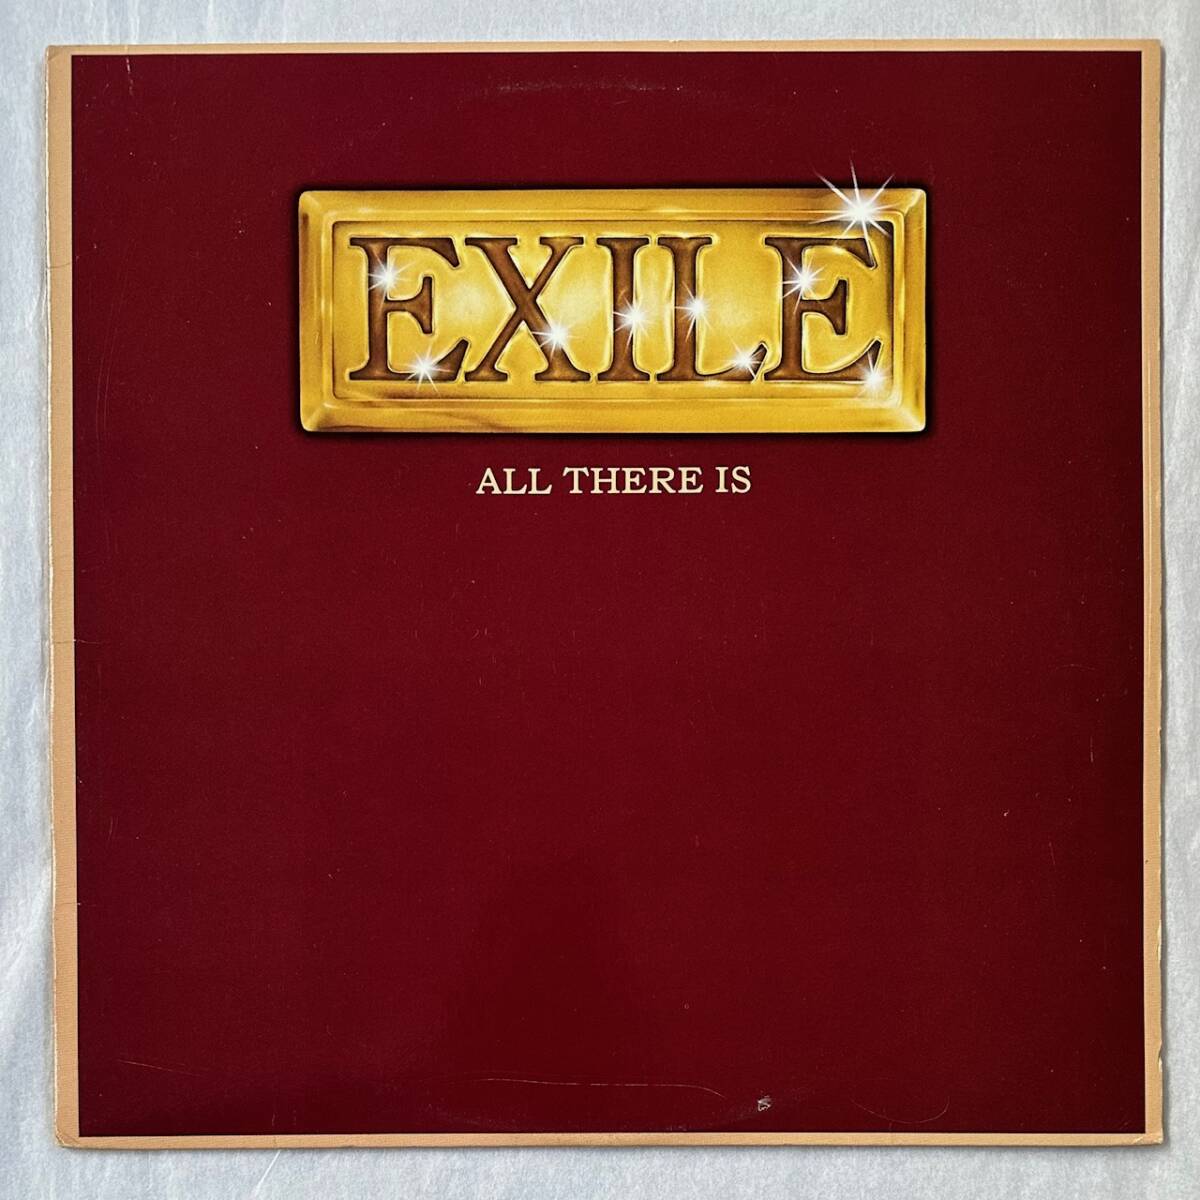 ■1979年 オリジナル US盤 Exile - All There Is 12”LP BSK 3323 Warner Bros. Records_画像1